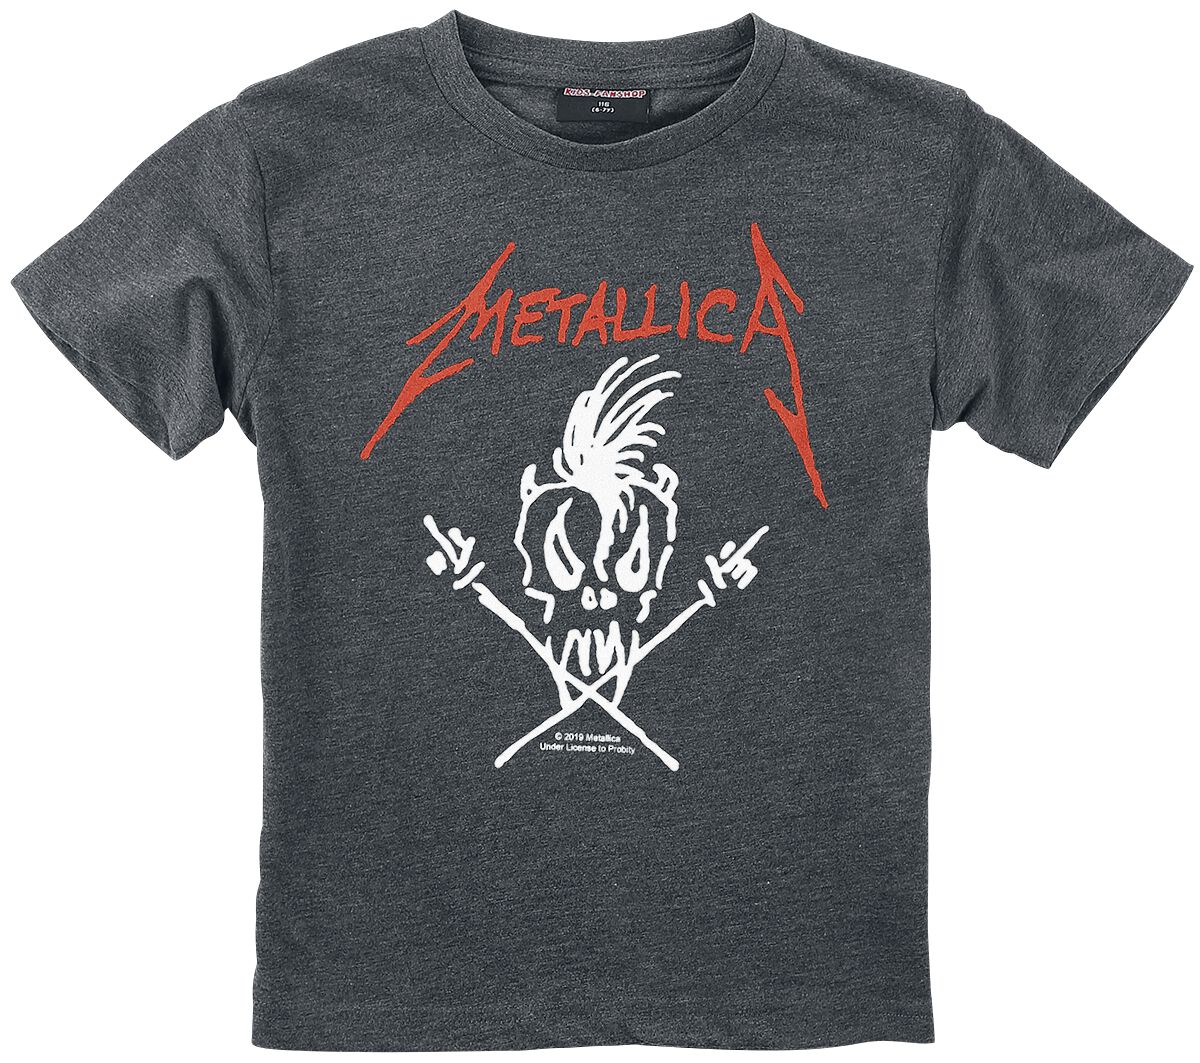 Metallica T-Shirt für Kleinkinder - Metal-Kids - Scary Guy - für Mädchen & Jungen - anthrazit meliert  - Lizenziertes Merchandise!